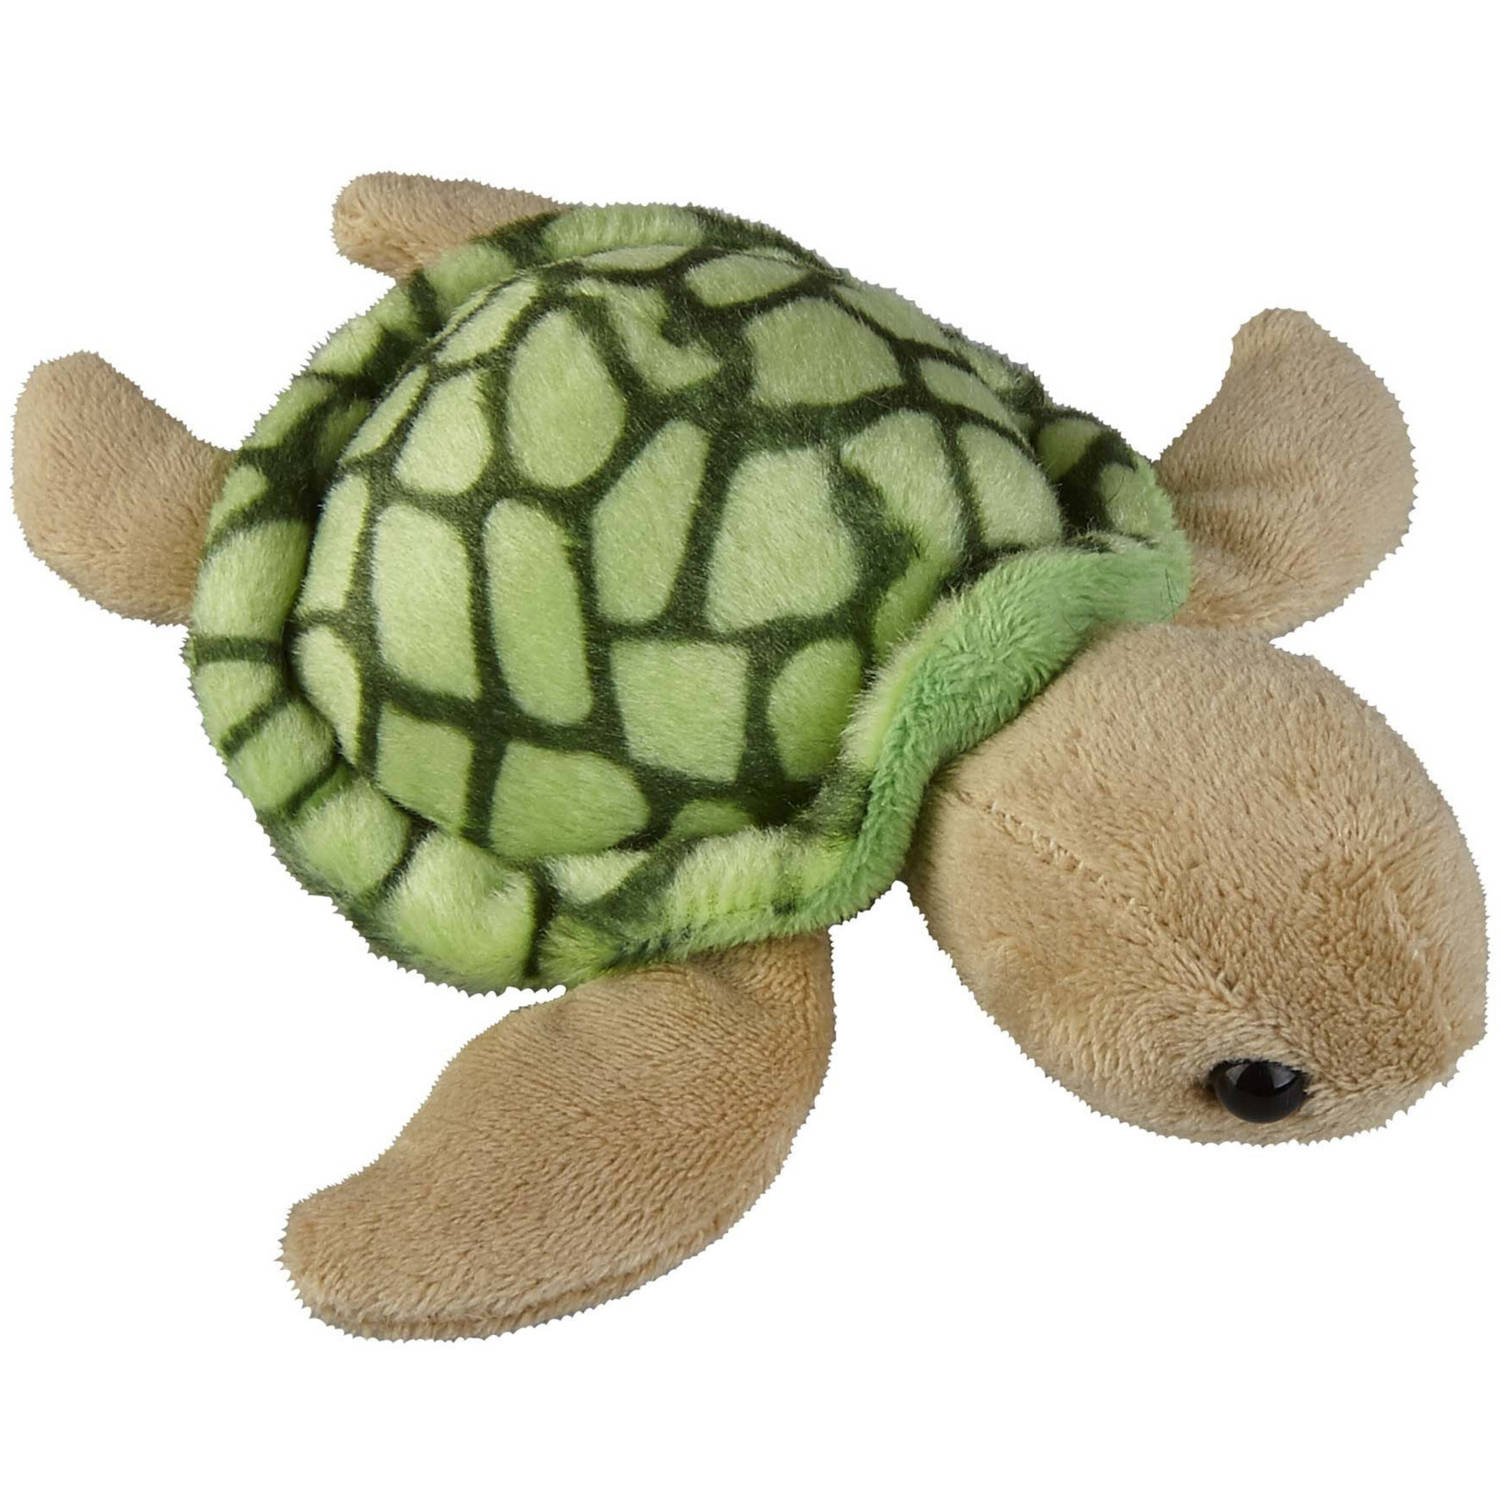 Pluche knuffel dieren Zeeschildpad van 12 cm - Speelgoed schildpadden knuffels - Leuk als cadeau voor kinderen